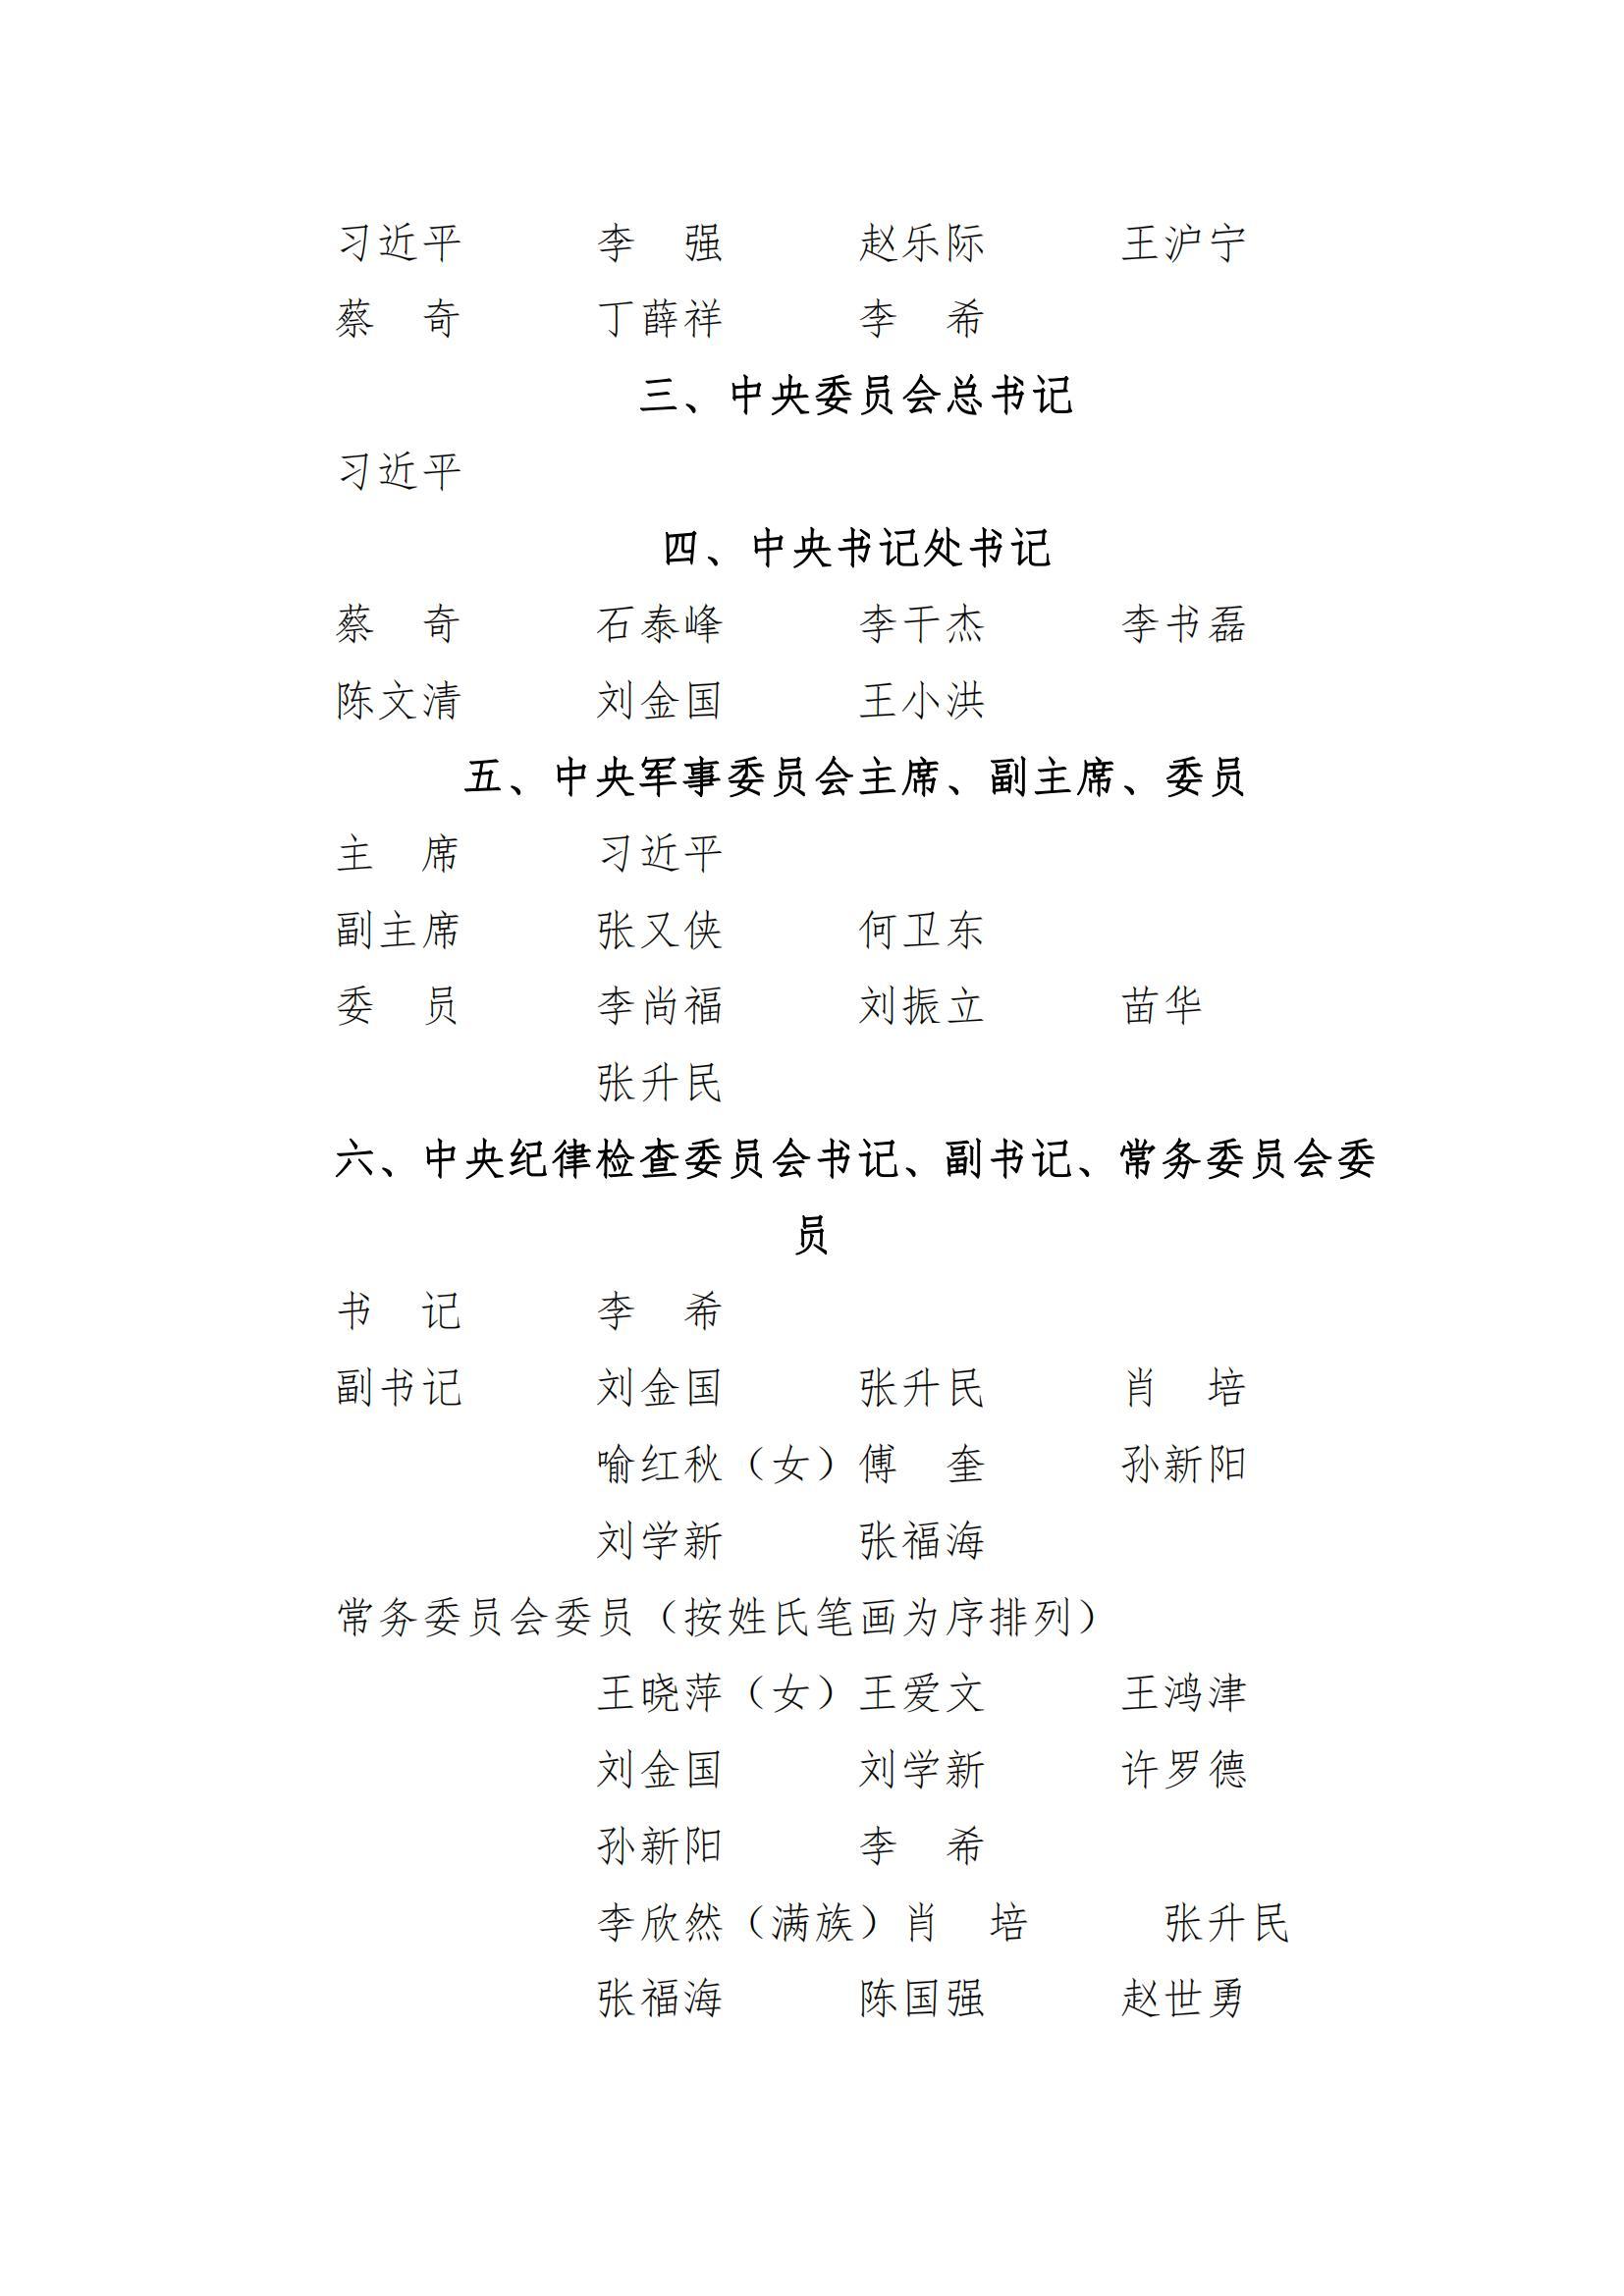 中国共产党第二十届中央委员会第一次全体会议公报_01